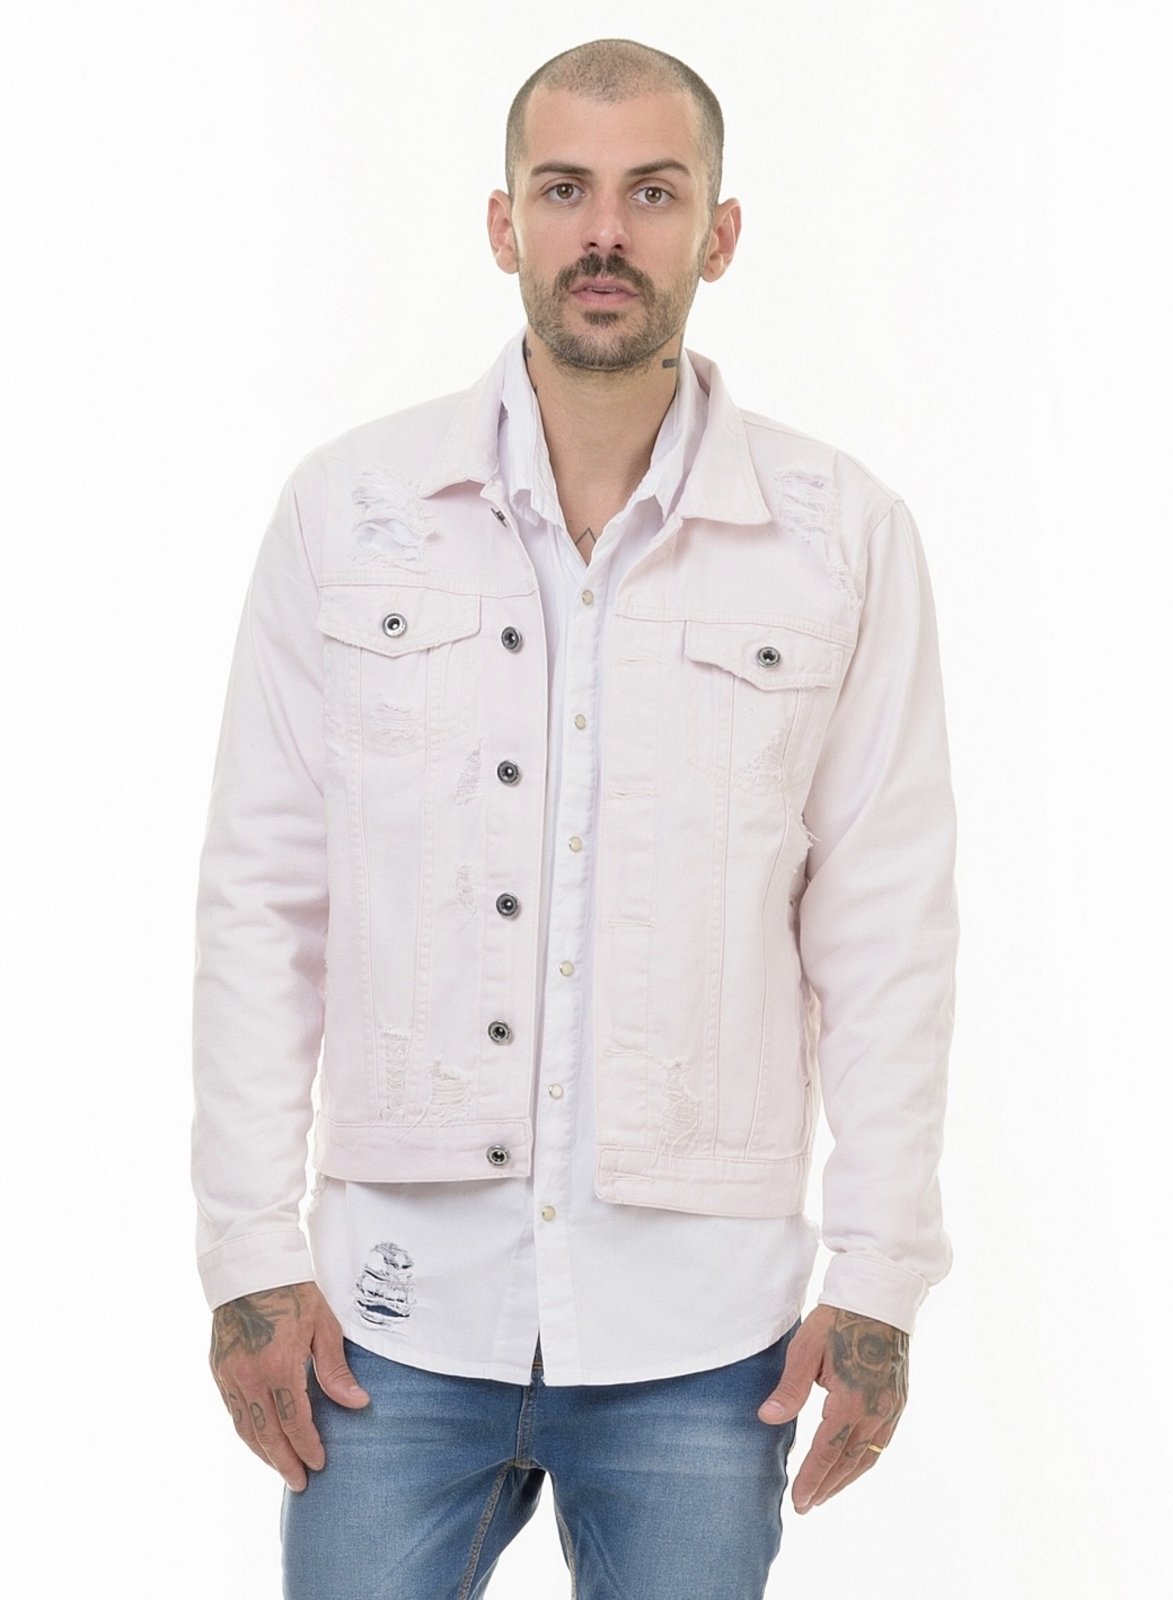 jaqueta jeans masculina rosa